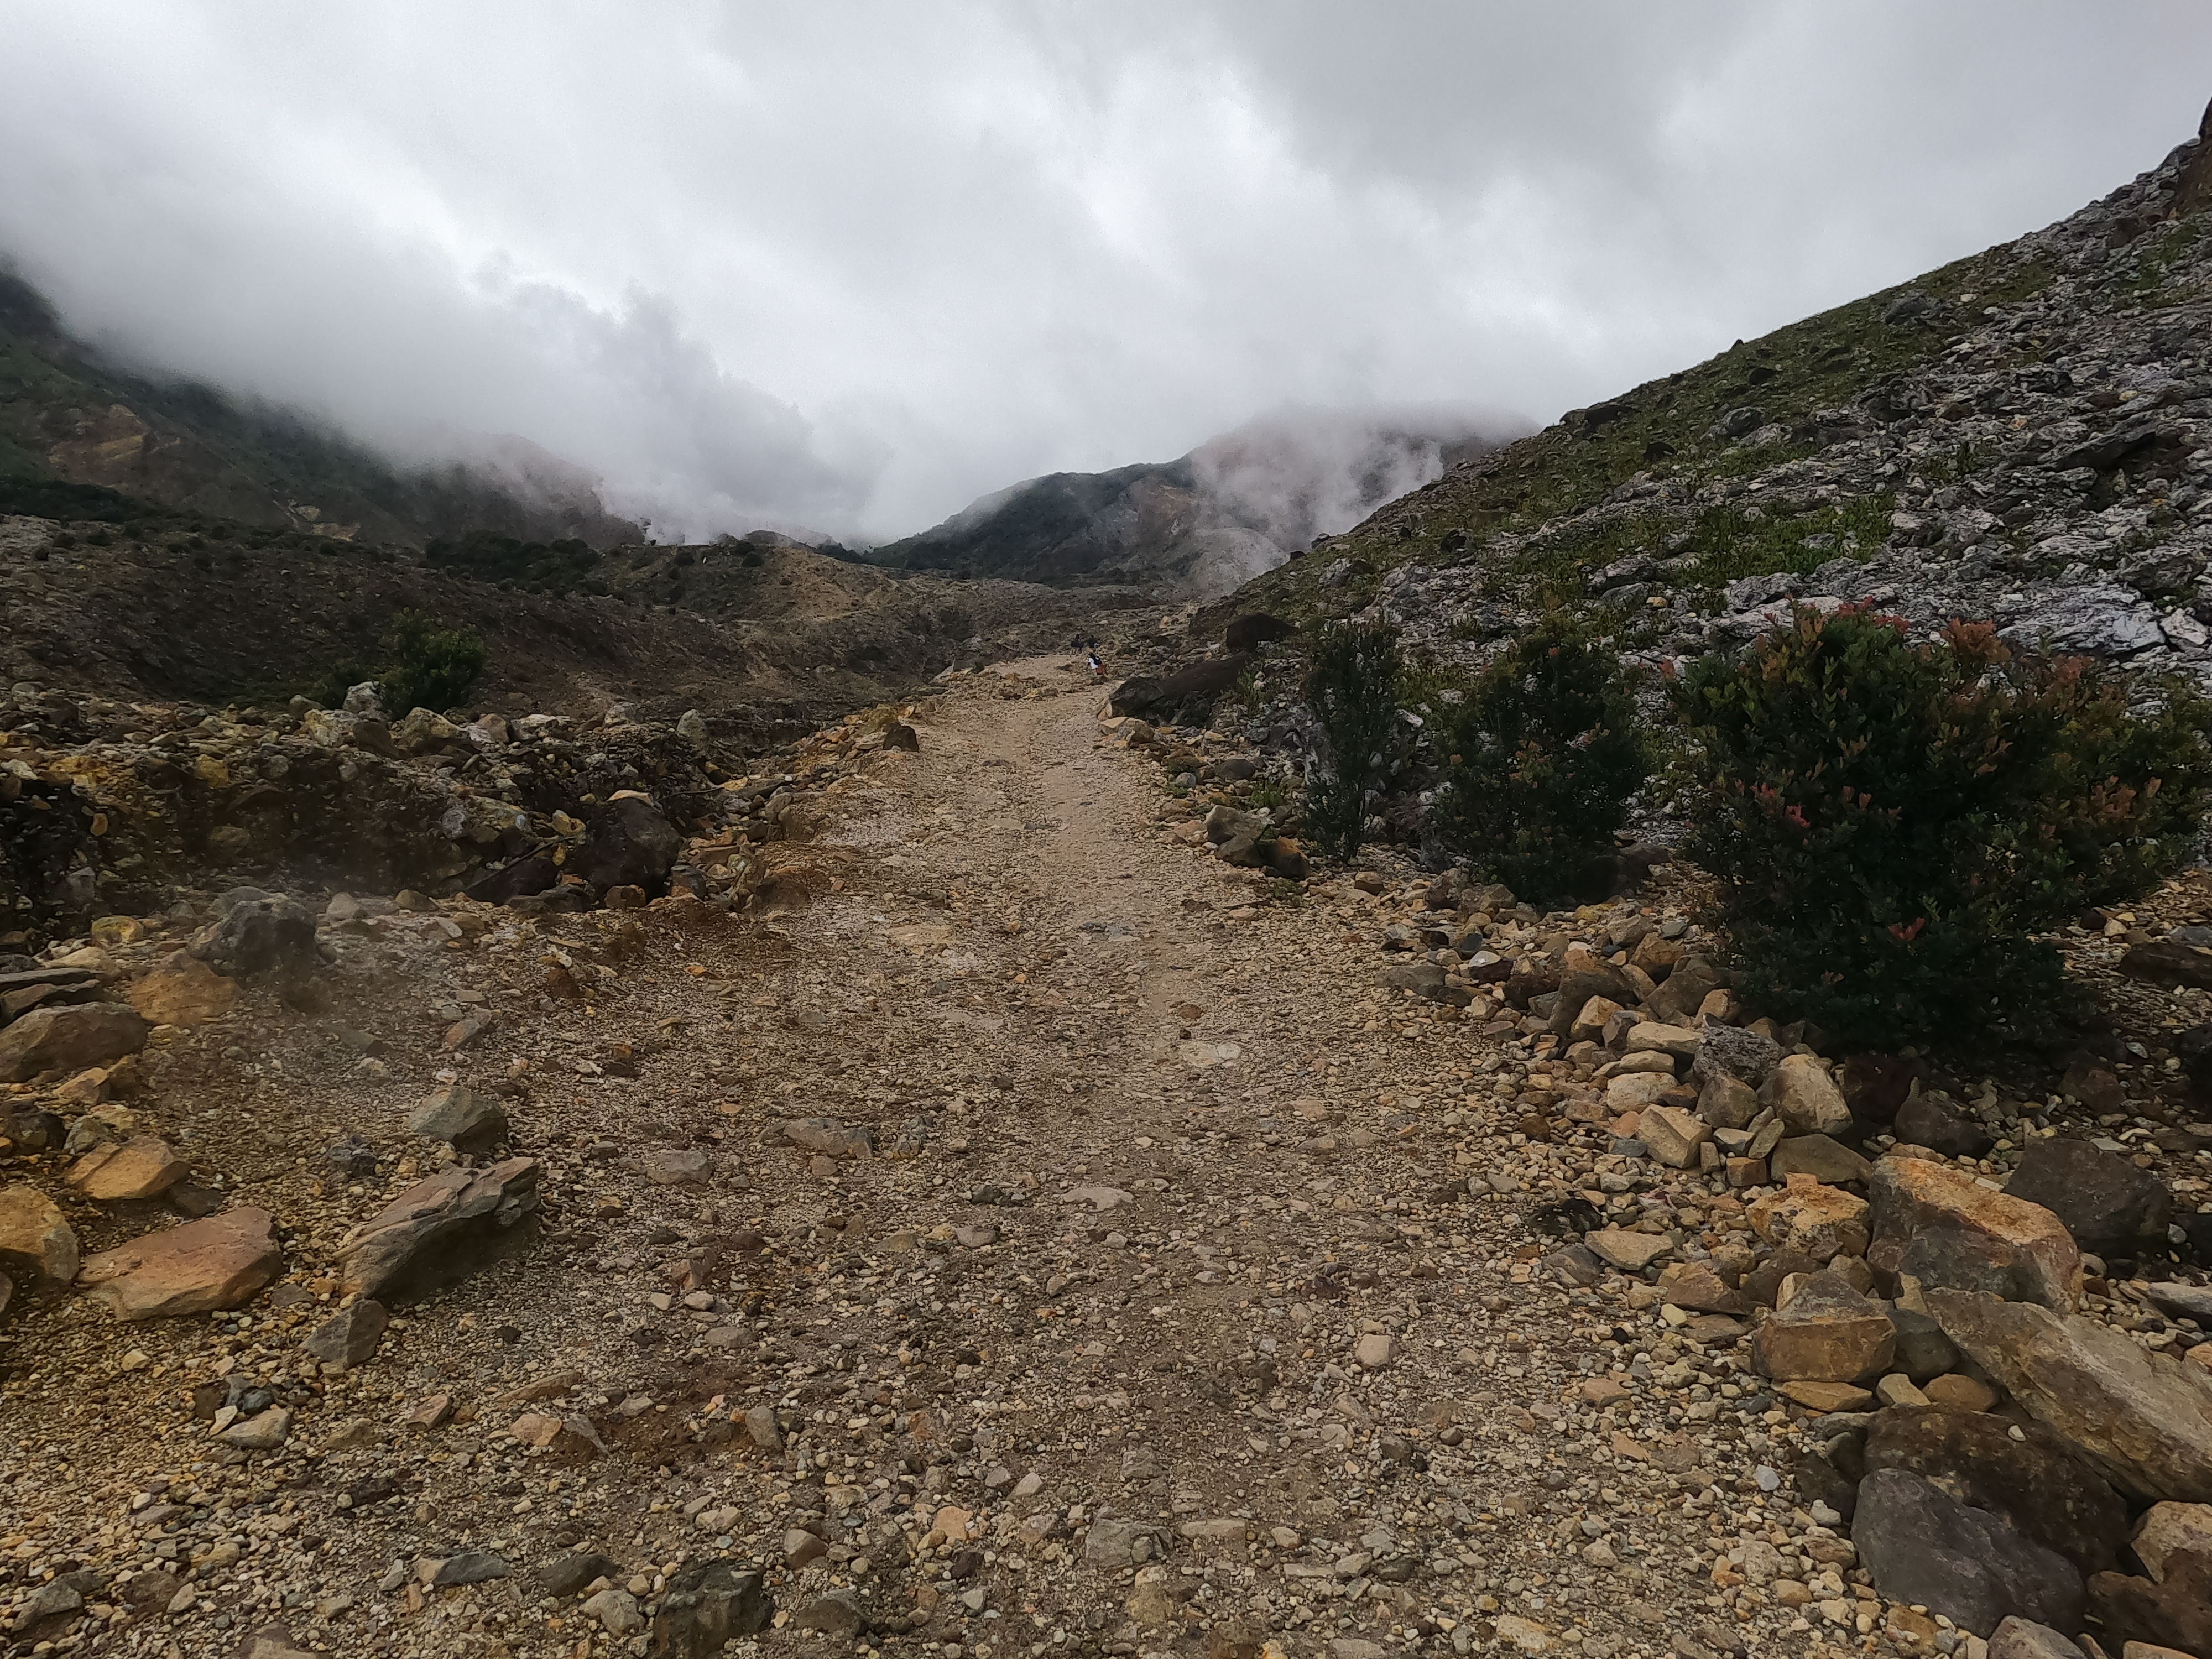 Photo 2: Jalan menuju ke puncak/area perkemahan. Berbatu dan berpasir, kiri-kanan disuguhi tebing-tebing serta hamparan luas kawah